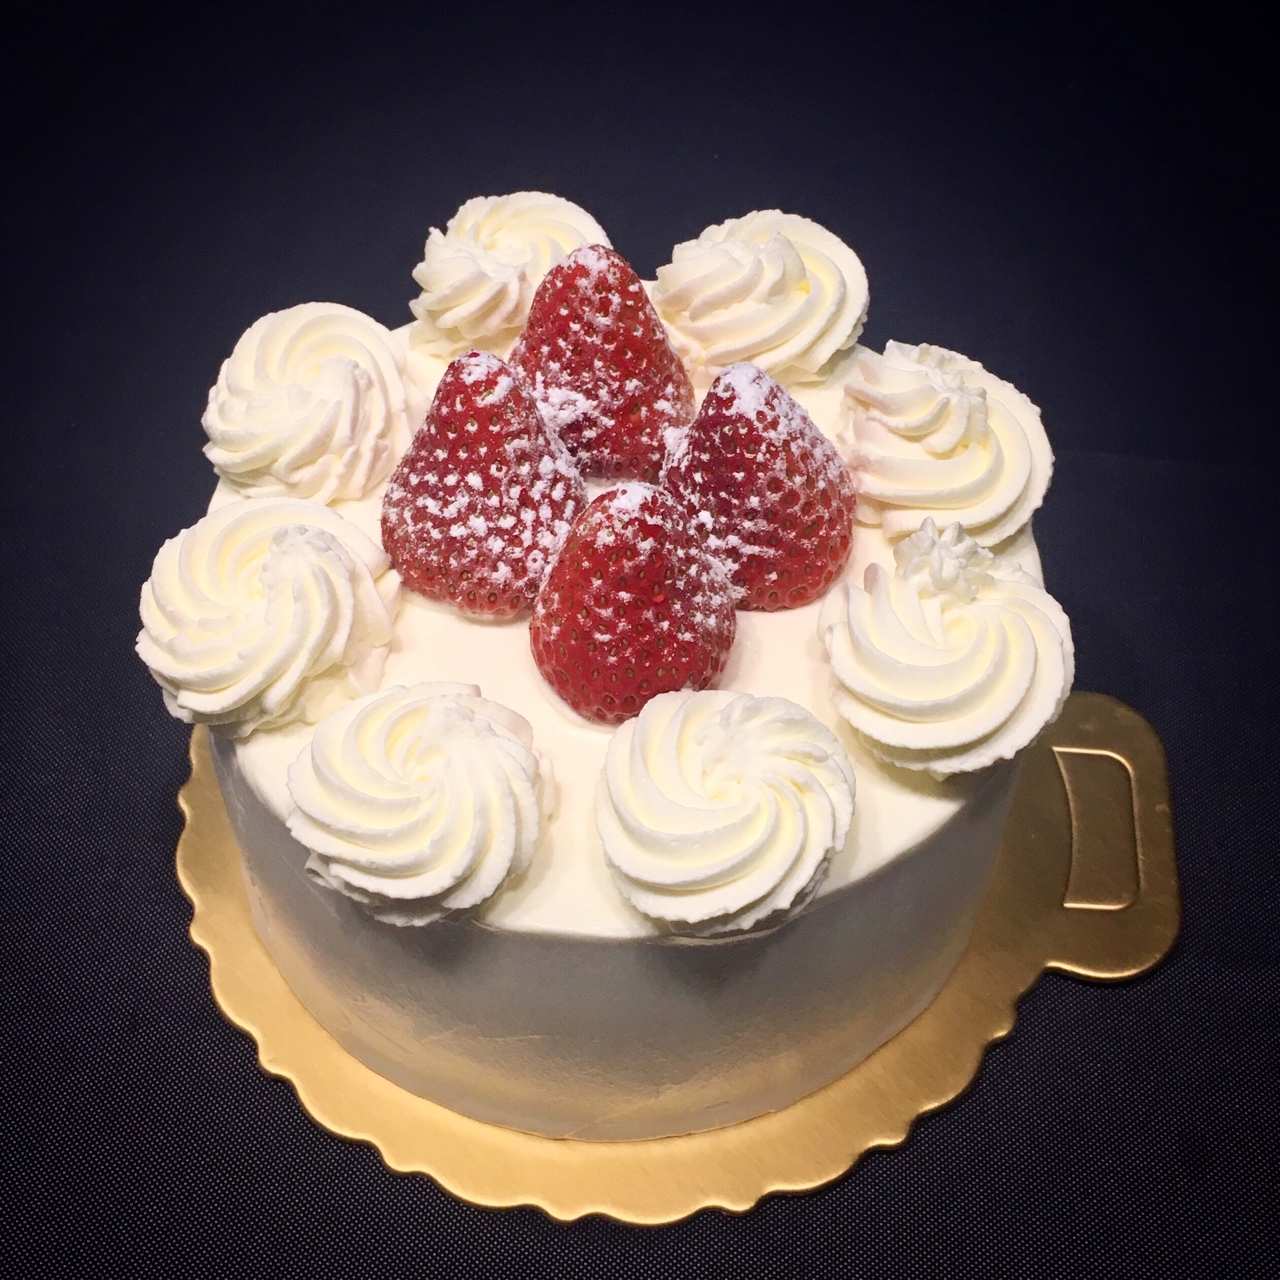 公子楚楚楚楚楚做的裱花奶油草莓蛋糕(含详细抹面裱花教程)